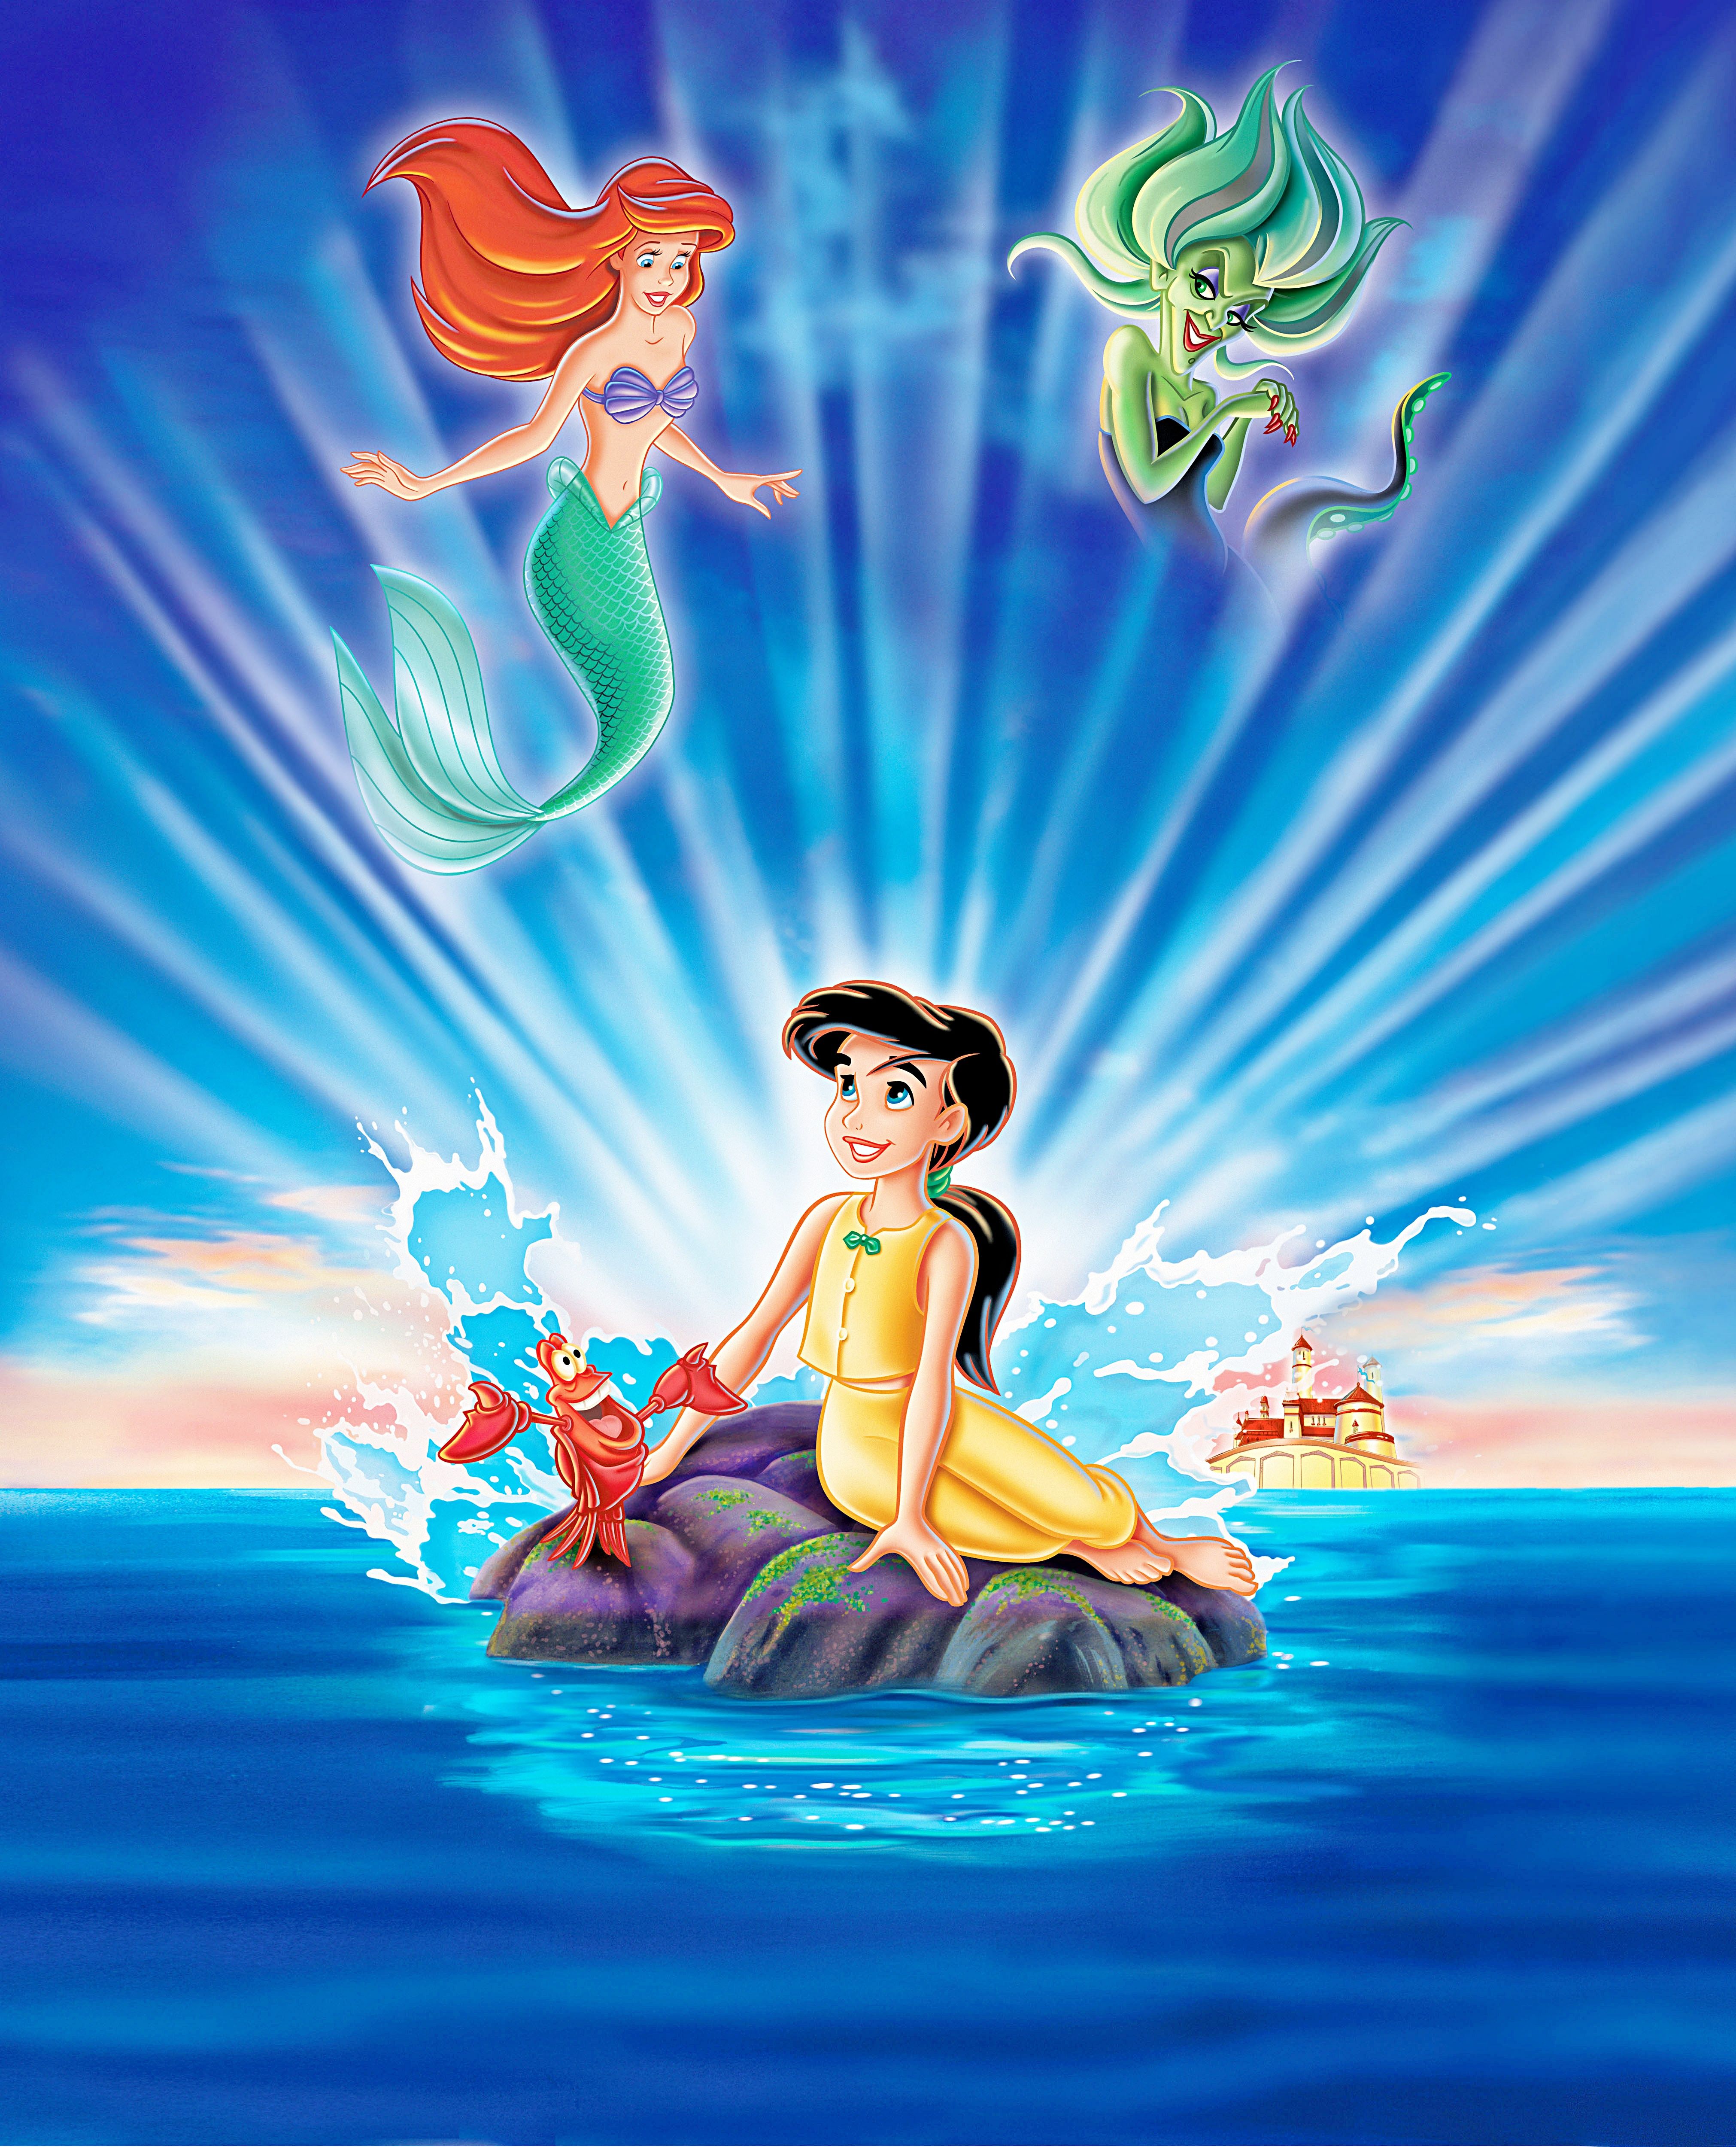 Little Mermaid 2 Poster